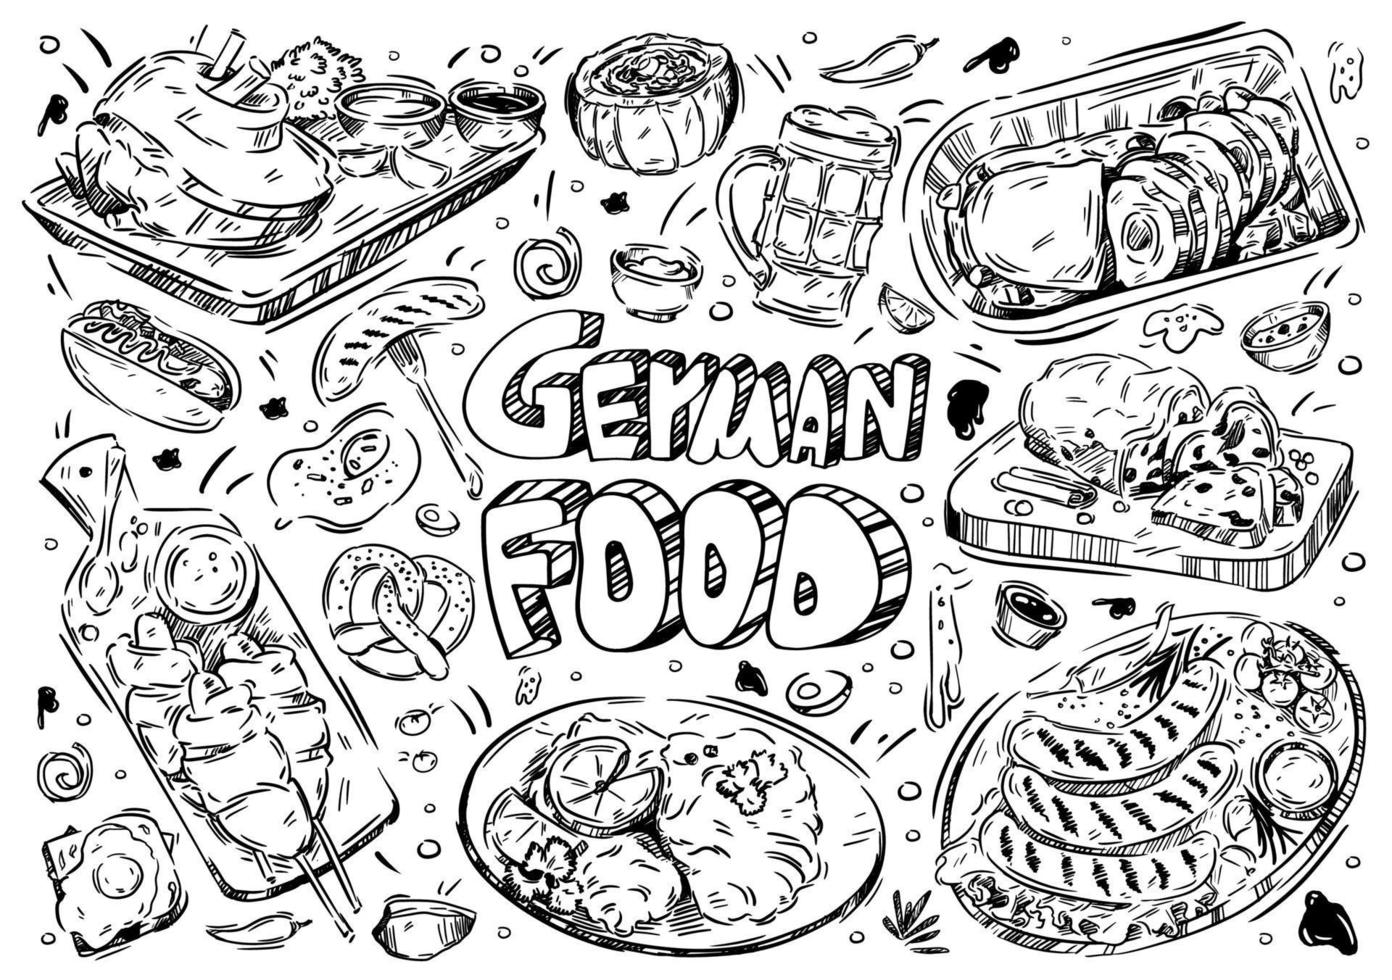 illustration vectorielle dessinés à la main. doodle nourriture allemande, wurst, kartoffelpuffer, brezel, schnitzel, strudel, bière, hot dog, articulation, soupe eintopf, oeuf, falscher hase, volé vecteur